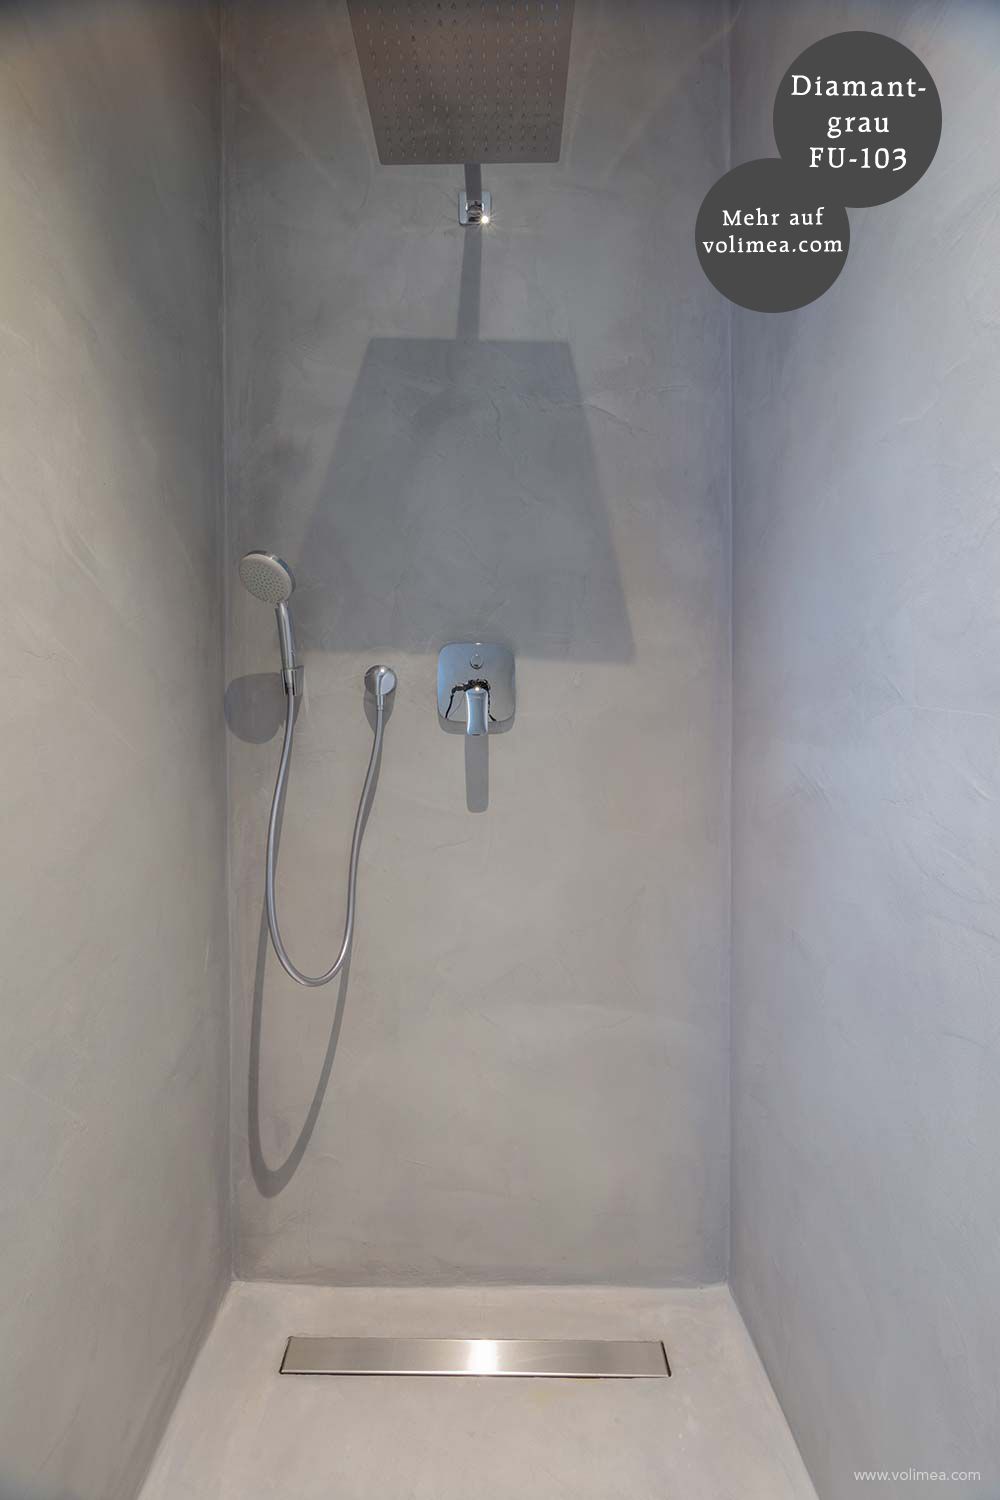 Futado Wand und Bodenbeschichtung in der Dusche Diamantgrau FU-103